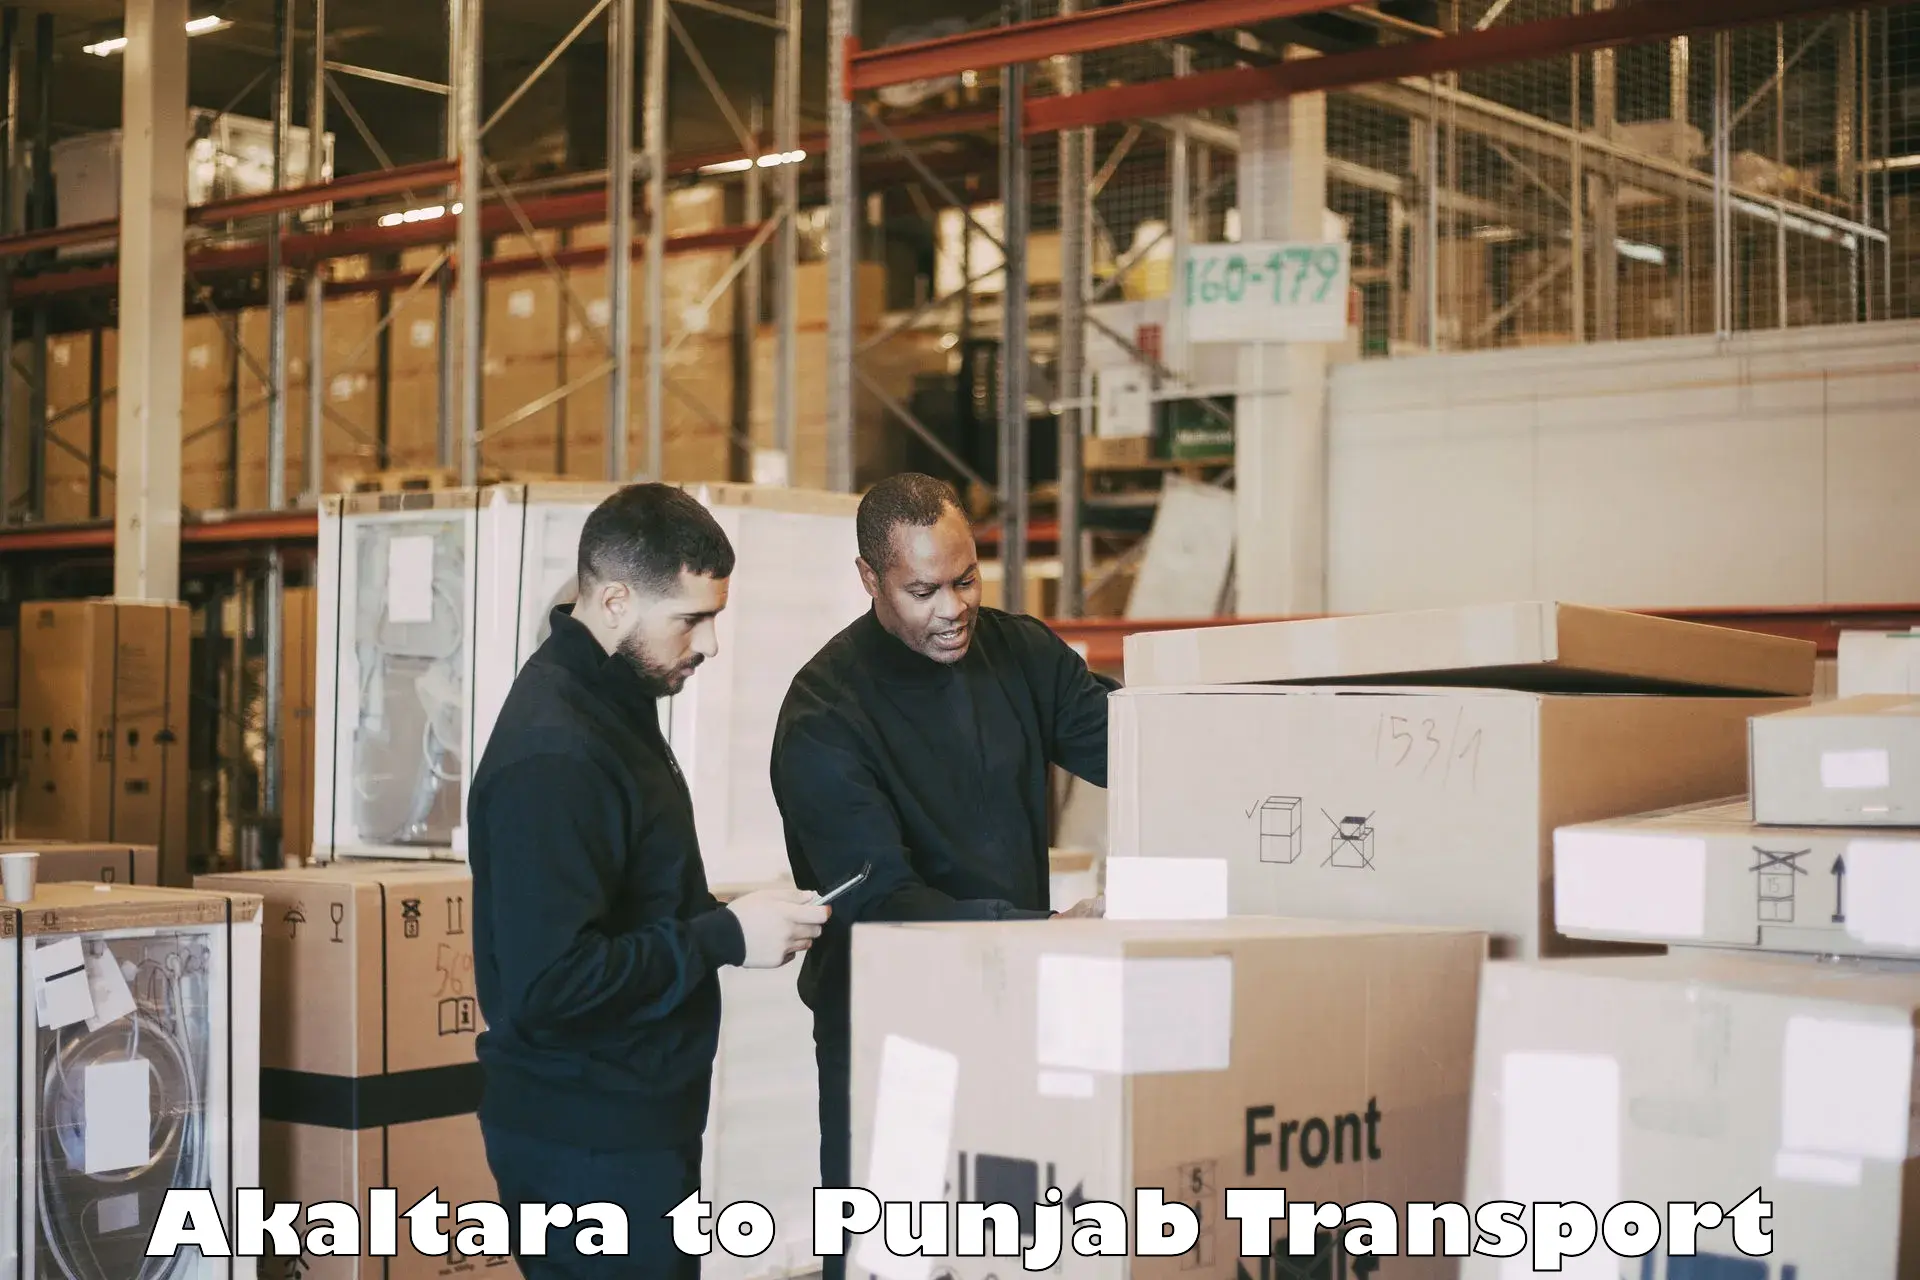 Container transportation services Akaltara to Rupnagar